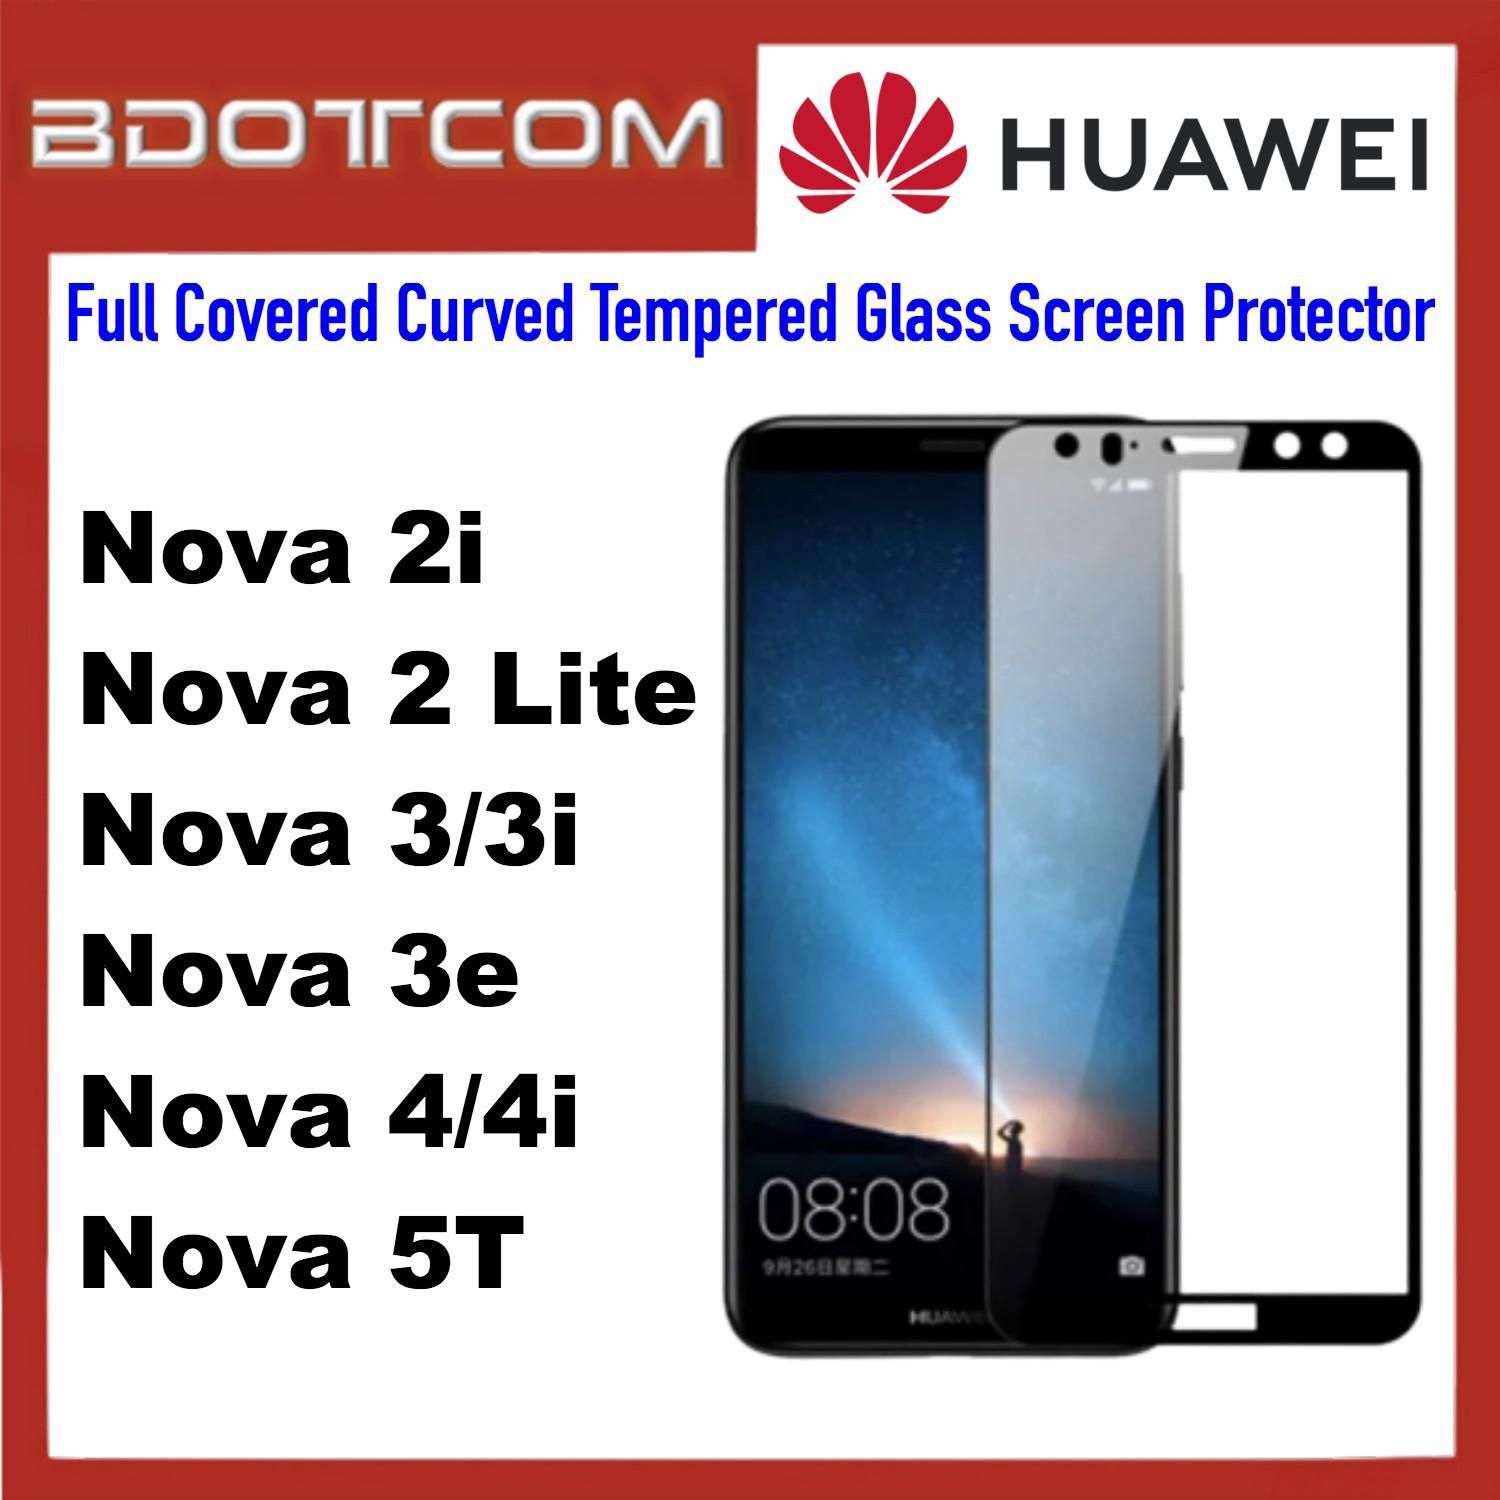 Bdotcom Full Covered Curved Glass Screen Protector for Huawei Nova 2i (Black)